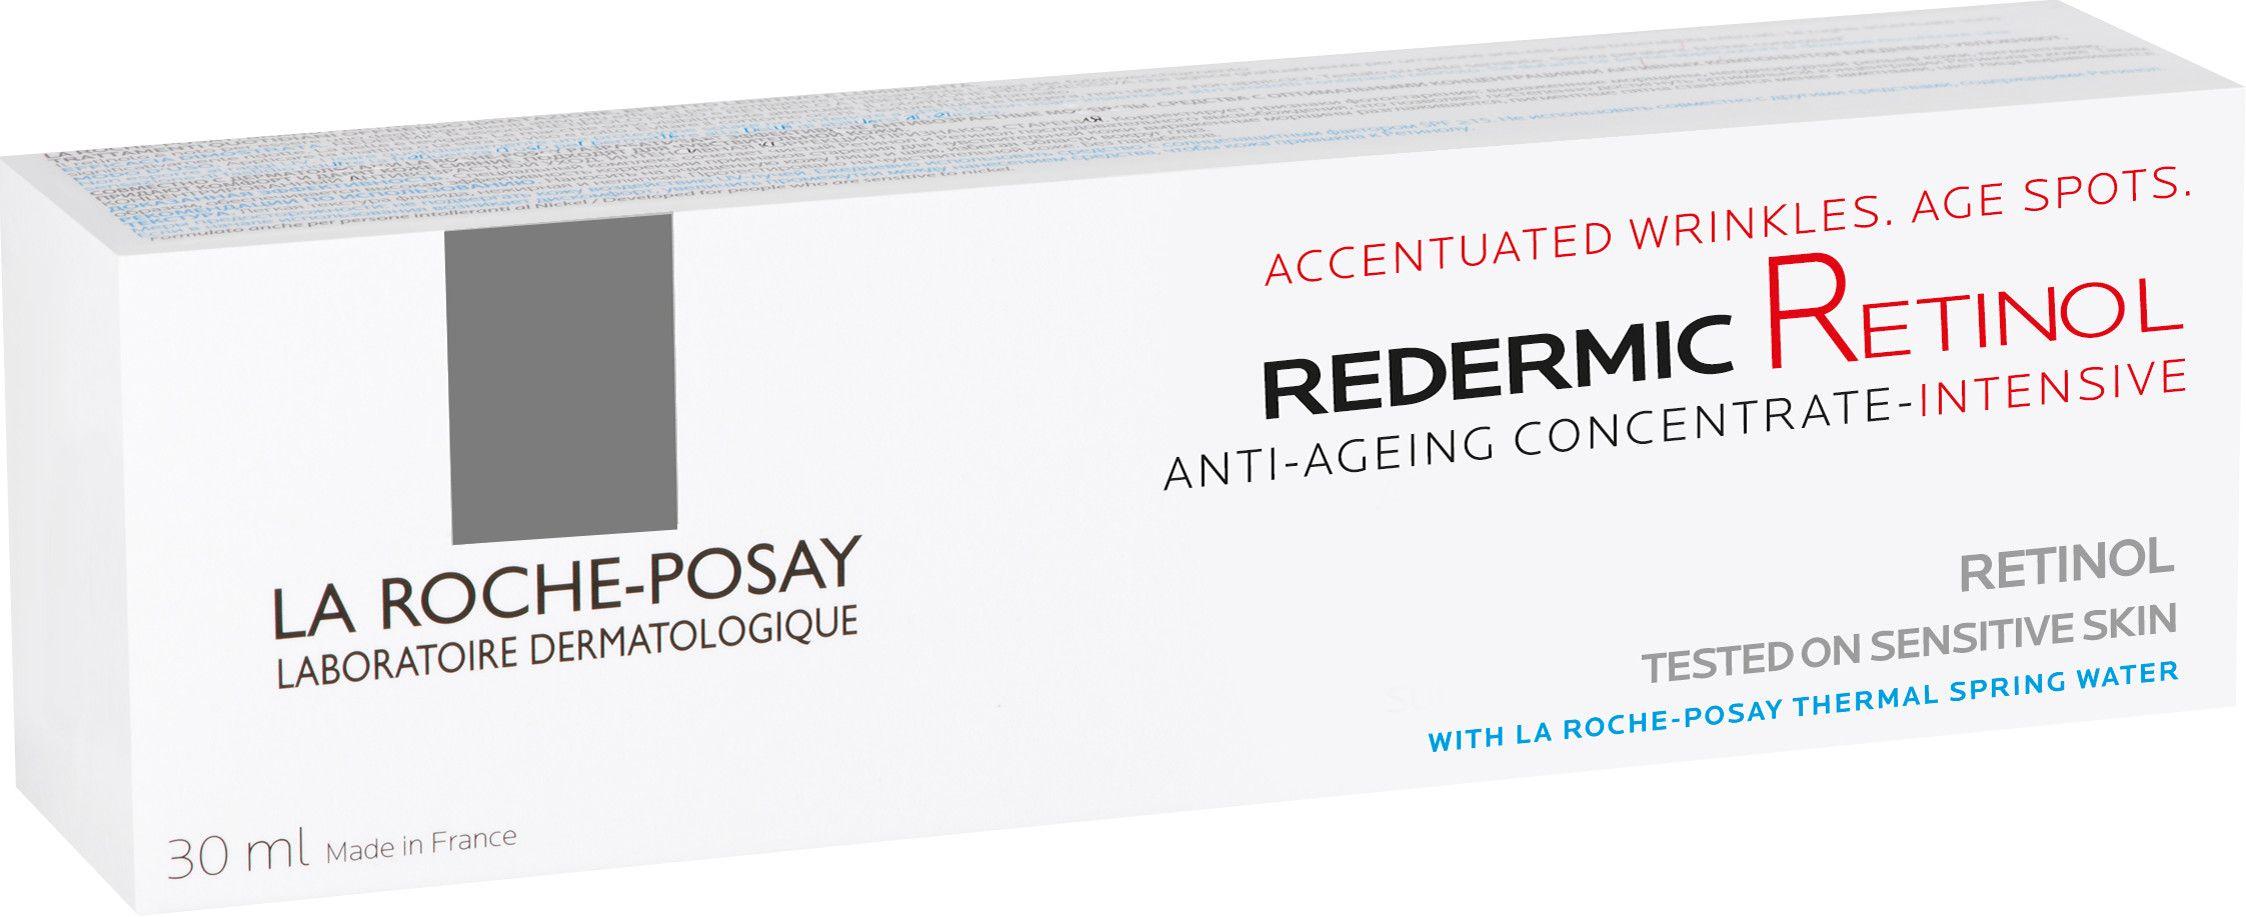 Escentual Logo - La Roche-Posay Redermic [R] Anti-Ageing Concentrate Intense